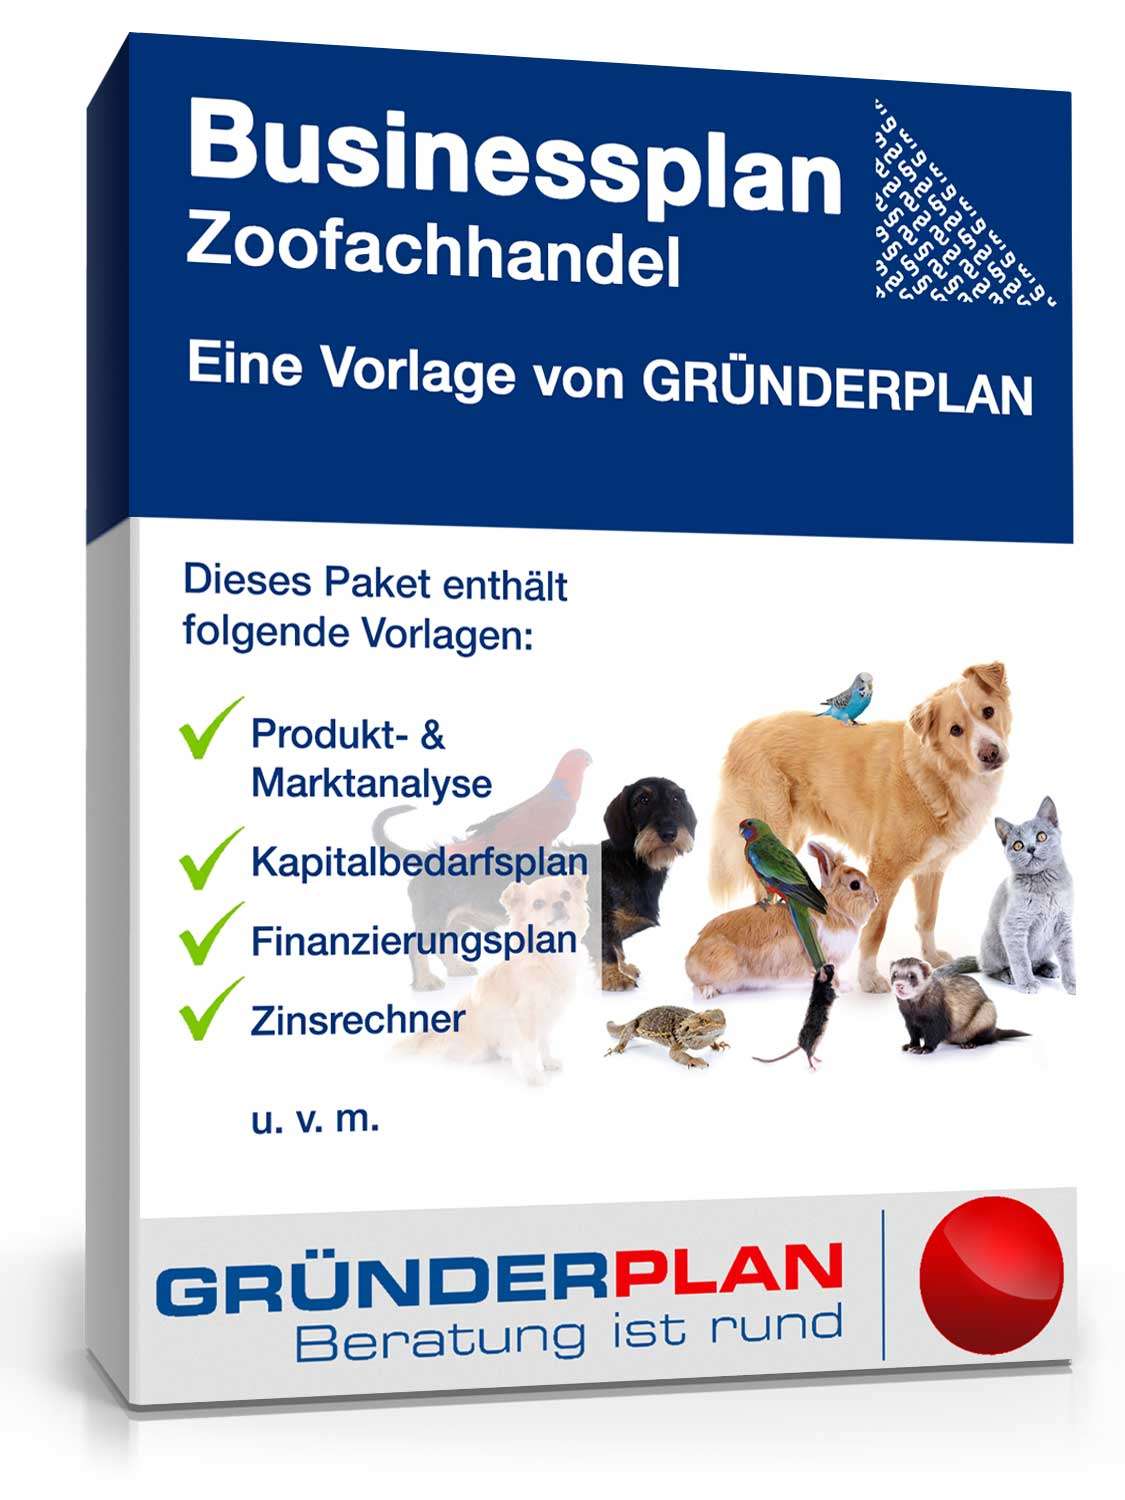 Hauptbild des Produkts: Businessplan Zoofachhandel von Gründerplan